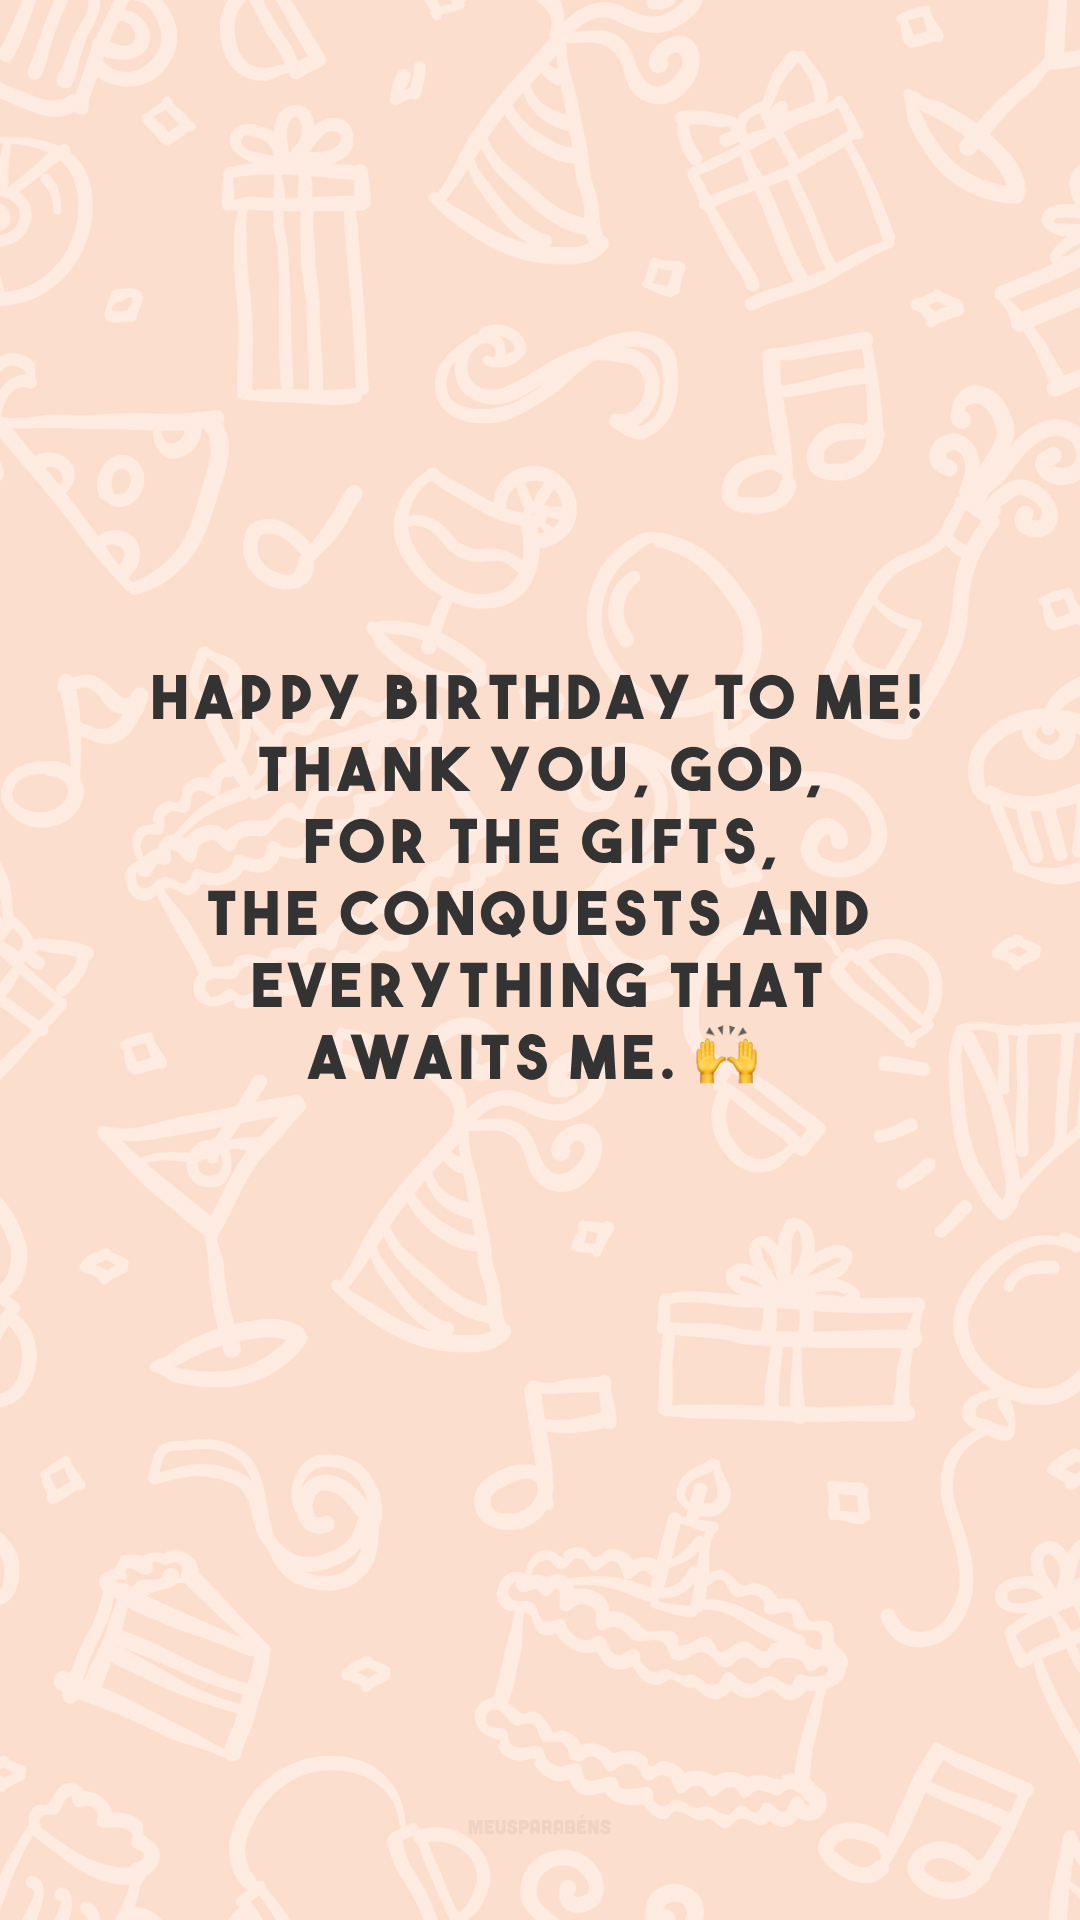 Happy birthday to me! Thank you, God, for the gifts, the conquests and everything that awaits me. 🙌

<p>(Feliz aniversário pra mim! Obrigada, Deus, pelas dádivas, pelas conquistas e por tudo o que me aguarda.)<p>